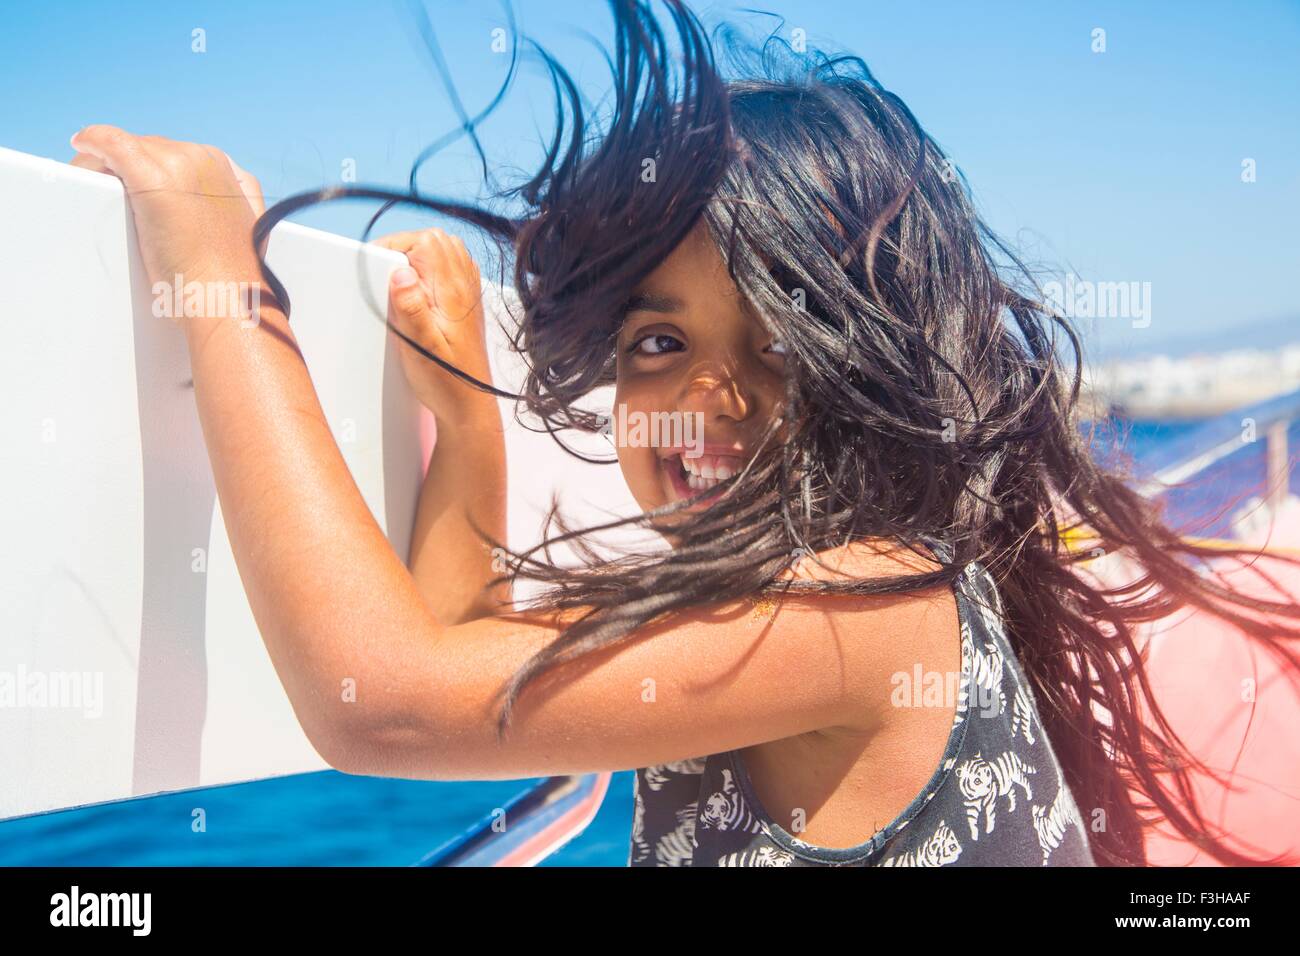 Carina ragazza con i capelli spazzate dal vento sul viaggio in barca, Tarifa, Spagna Foto Stock